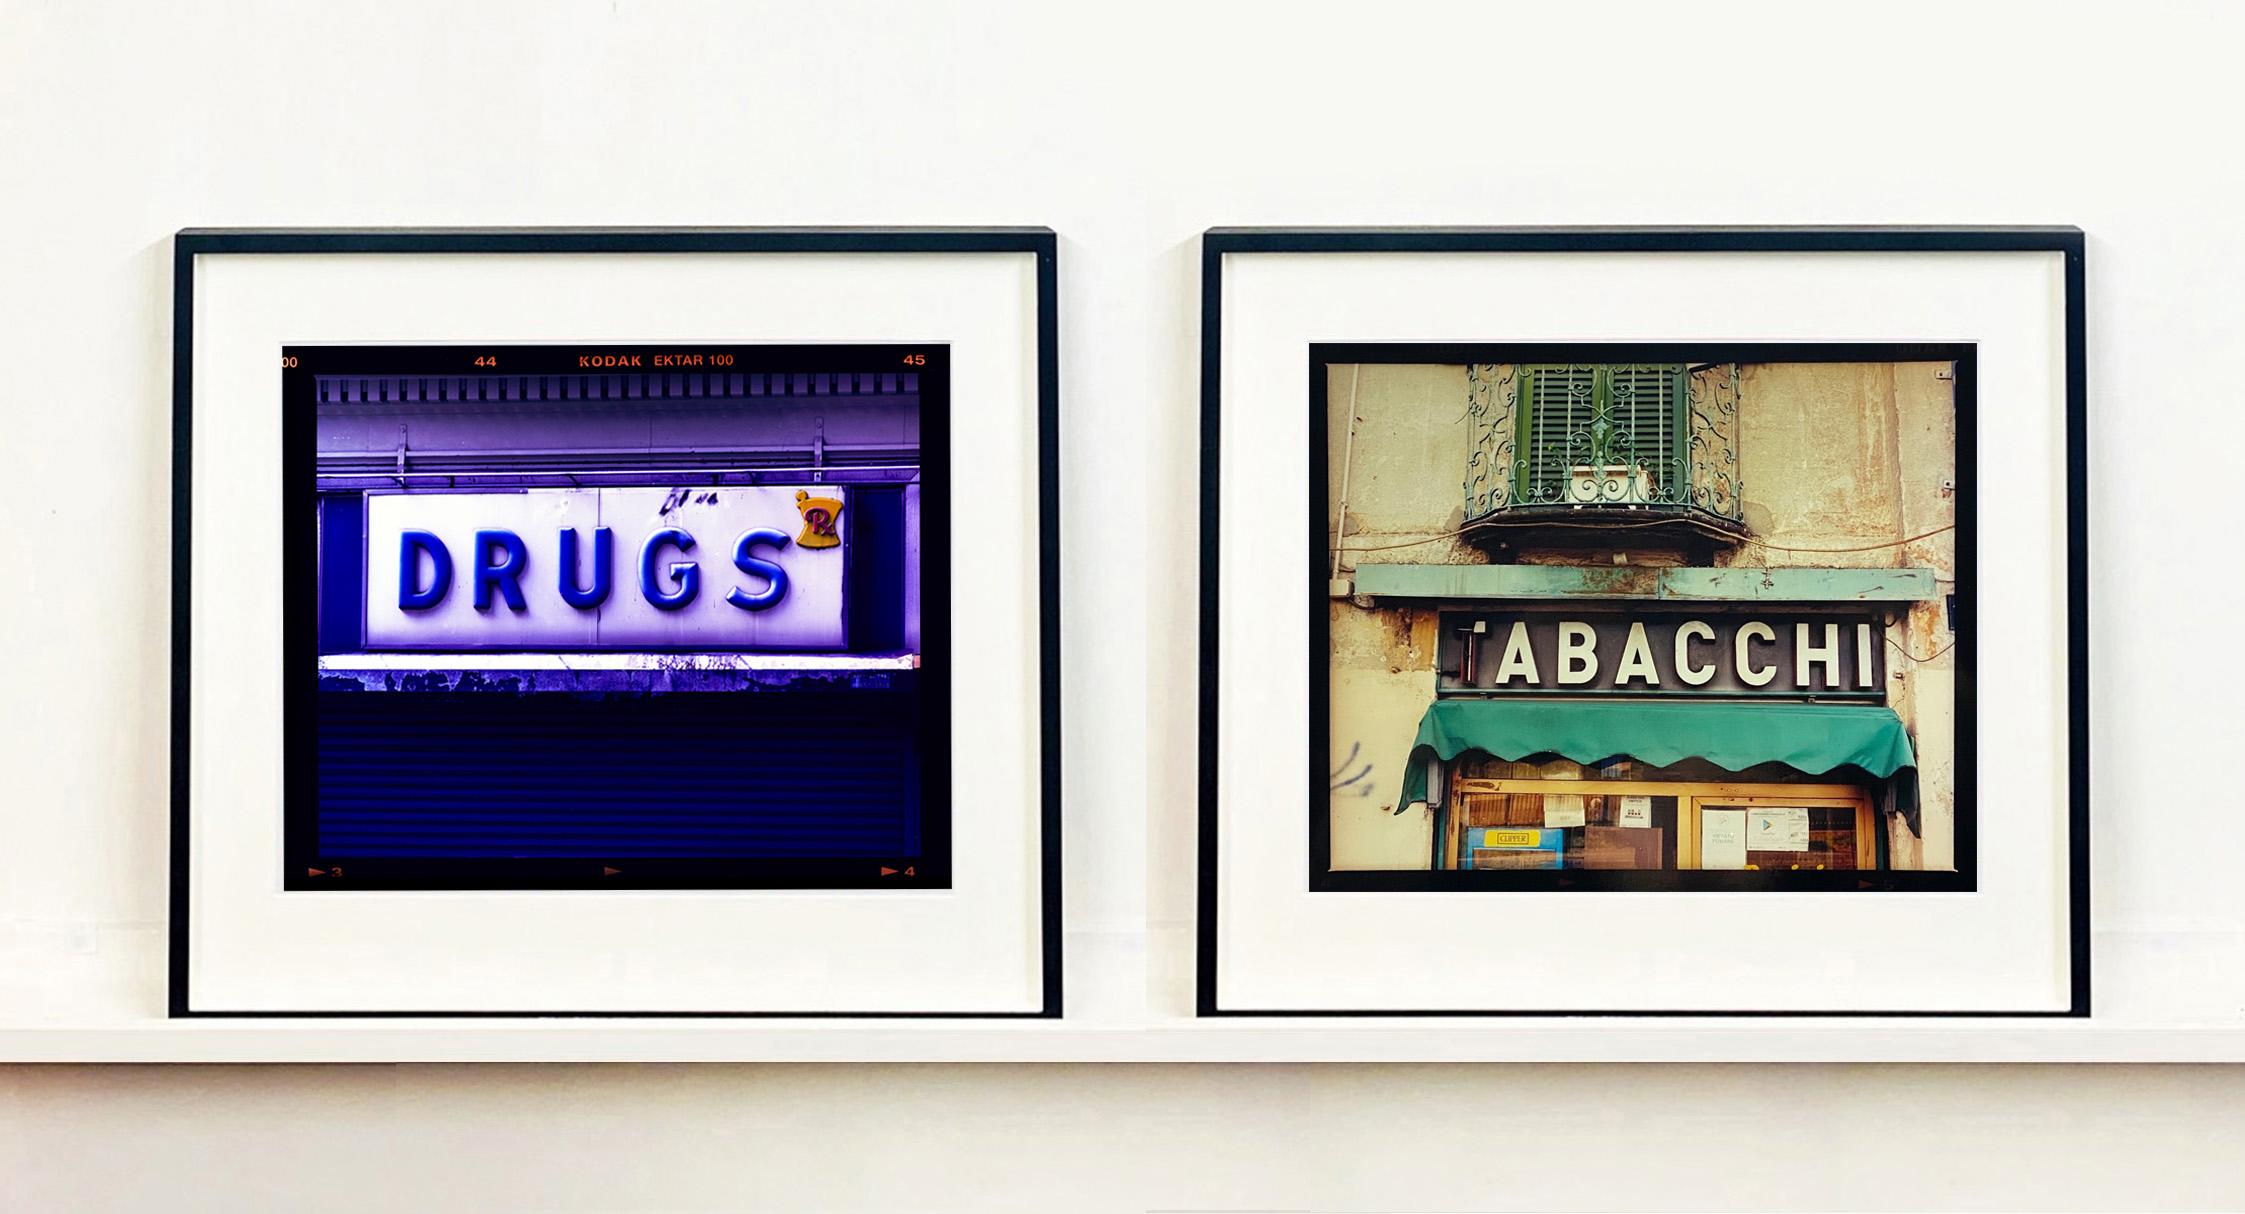 TABACCHI Sign, aus Richard Heeps Serie A Short Series of Milan, Teil von Richards Portfolio von Straßenfotografien, die er aufbaut und die die Farben, das Gefüge und die Struktur von Städten mit unverwechselbarem Stil darstellen.

Dieses Kunstwerk